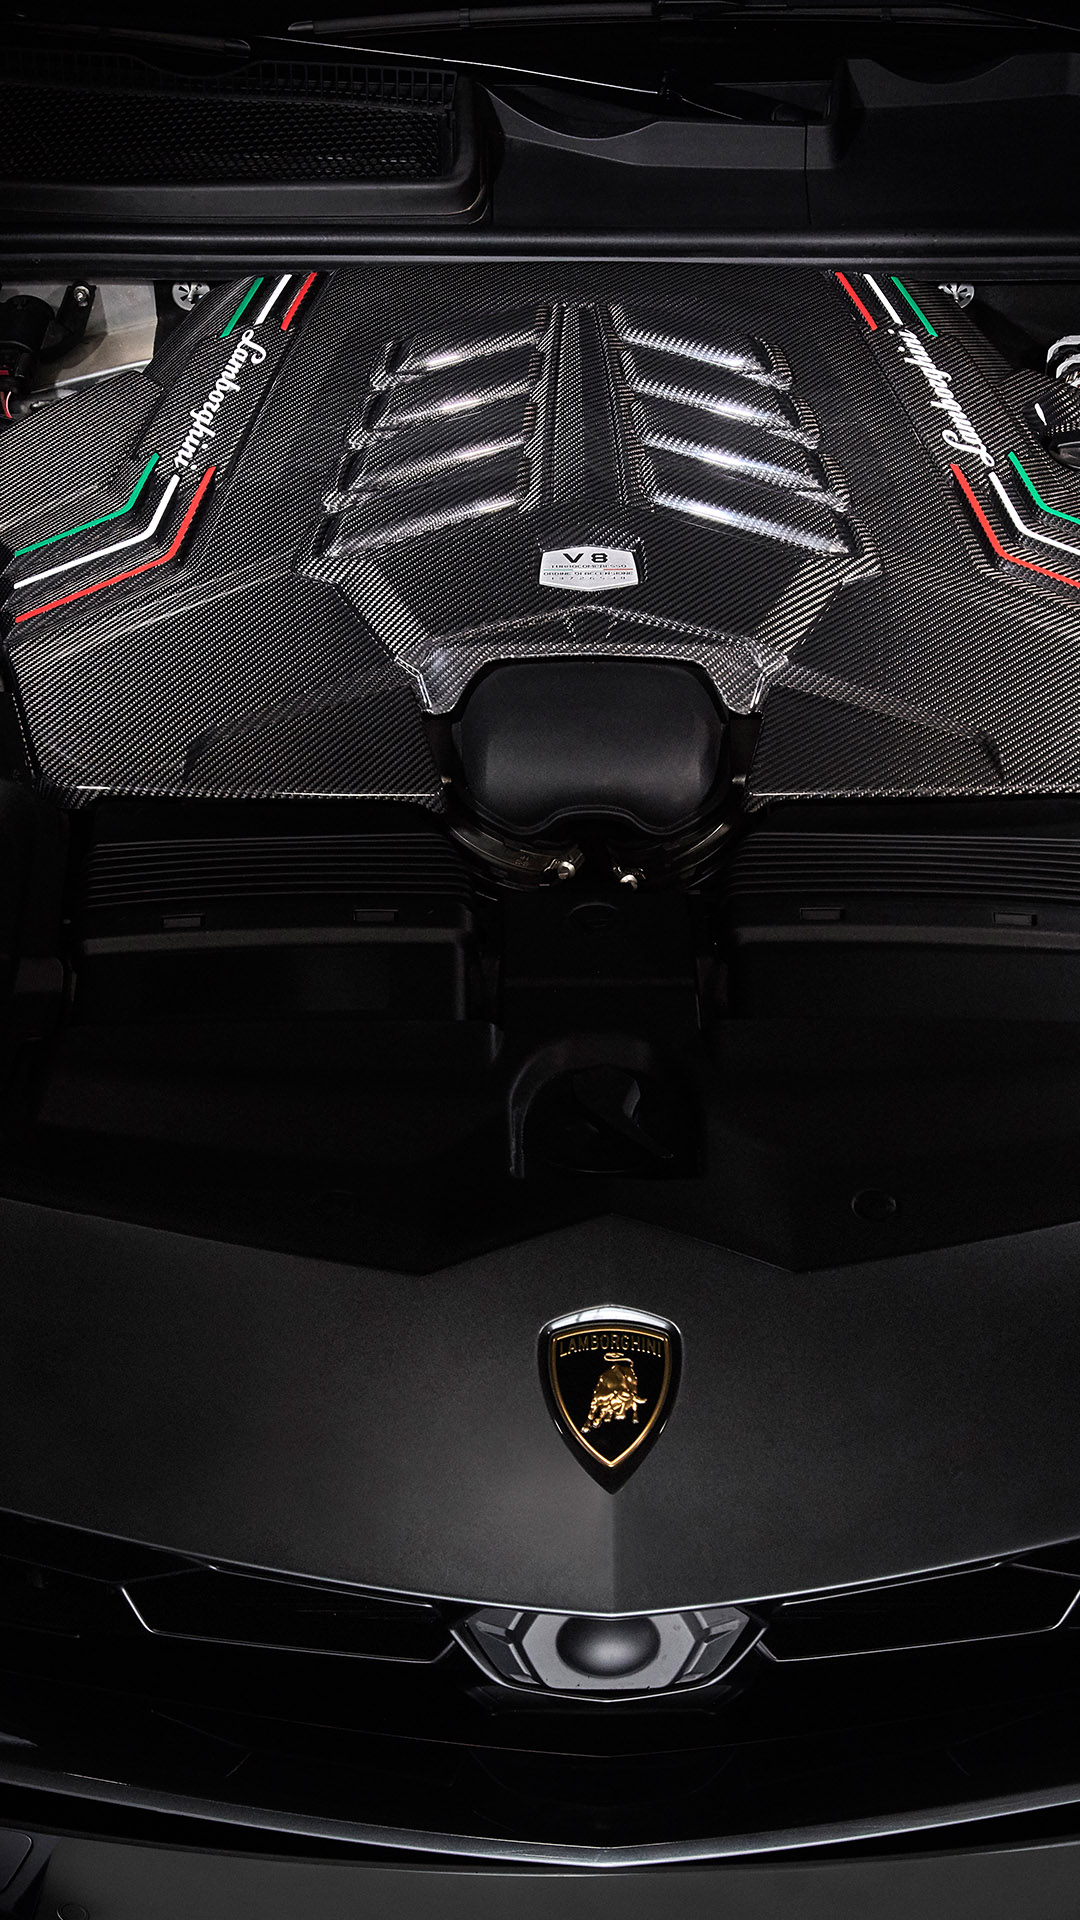 Accessori originali - Urus | Lamborghini.com